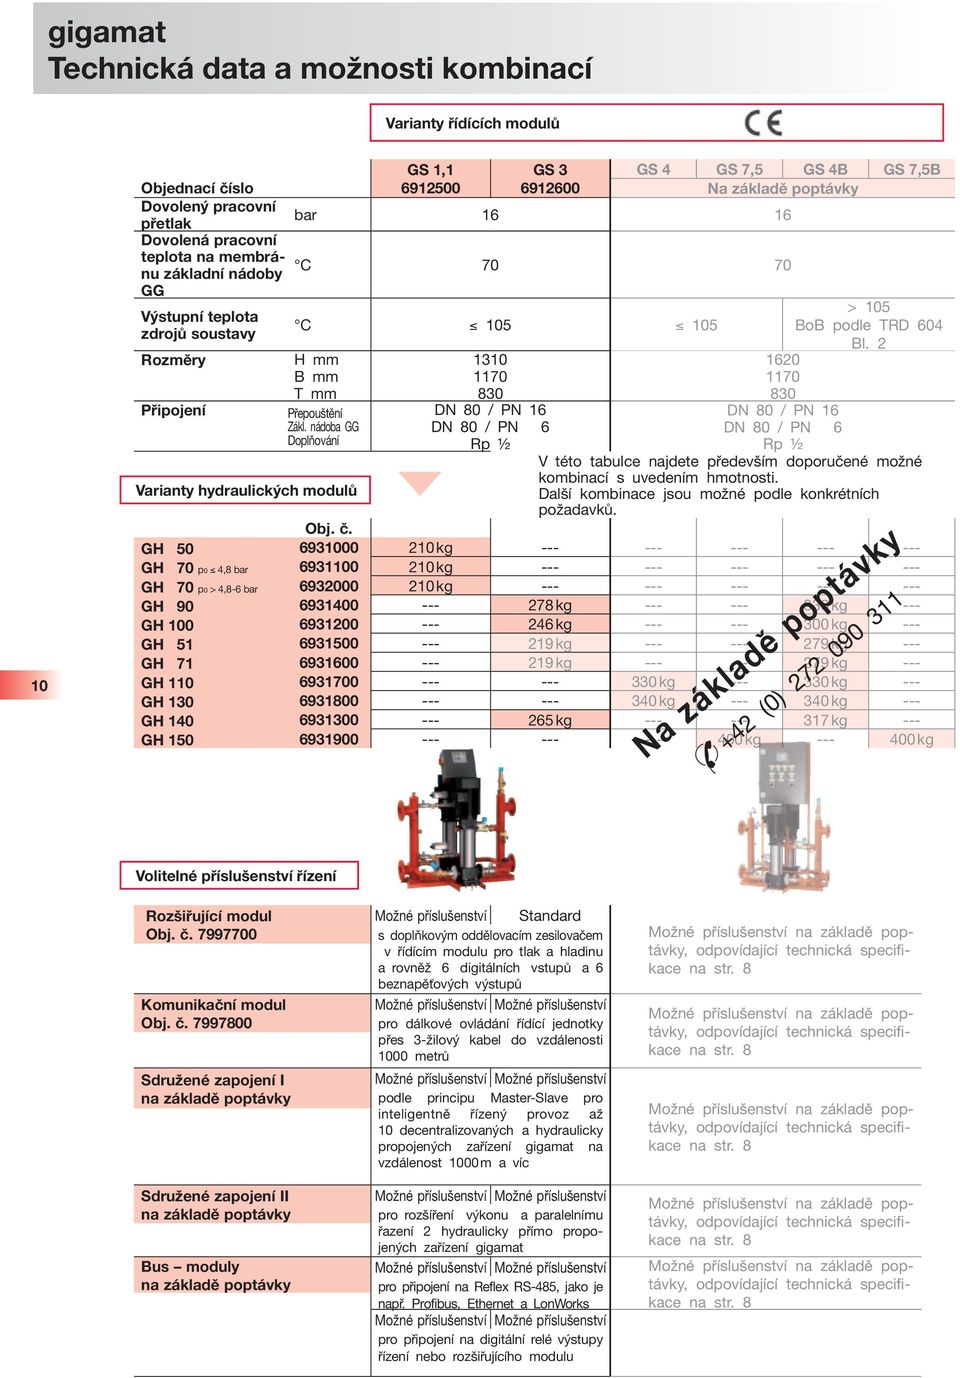 nádoba GG Doplňování Varianty hydraulických modulů 1310 1170 830 DN 80 / PN 16 DN 80 / PN 6 Rp ½ 1620 1170 830 > 105 BoB podle TRD 604 Bl.